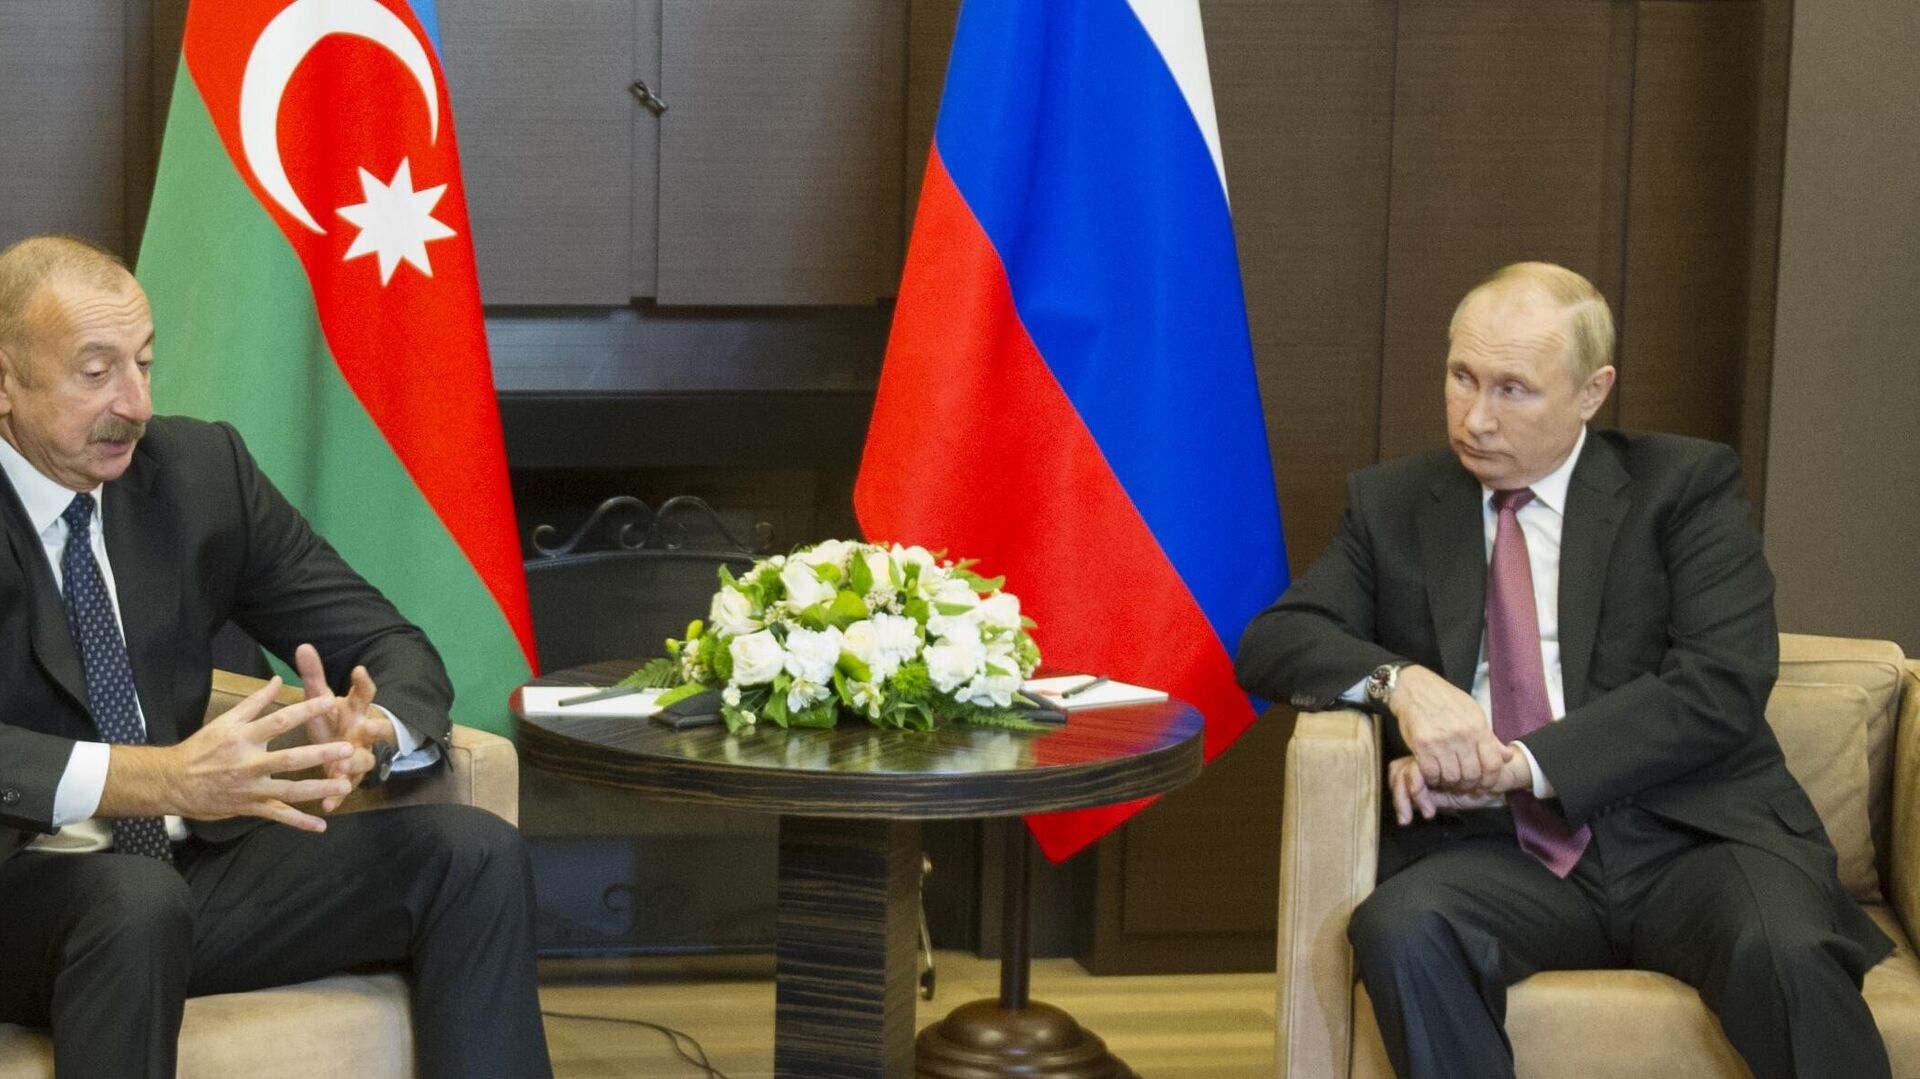 Tổng thống Nga Vladimir Putin gặp Tổng thống Azerbaijan Ilham Aliyev tại Sochi, Nga. - Sputnik Việt Nam, 1920, 26.11.2021